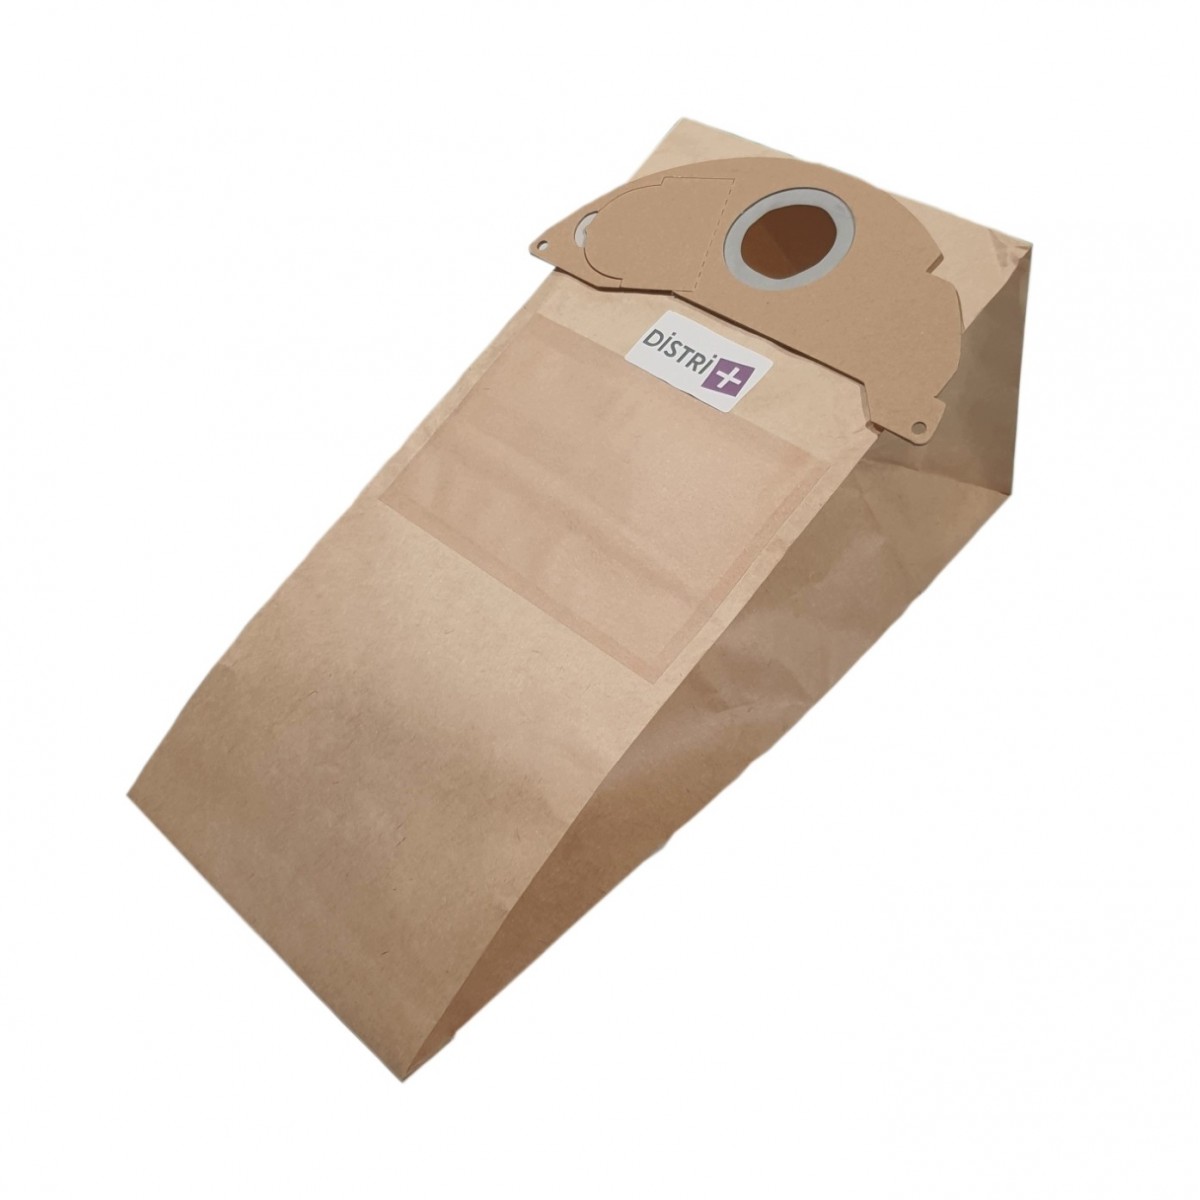 Sac aspirateur Karcher 5 sacs papier - 10178 - Hypronet